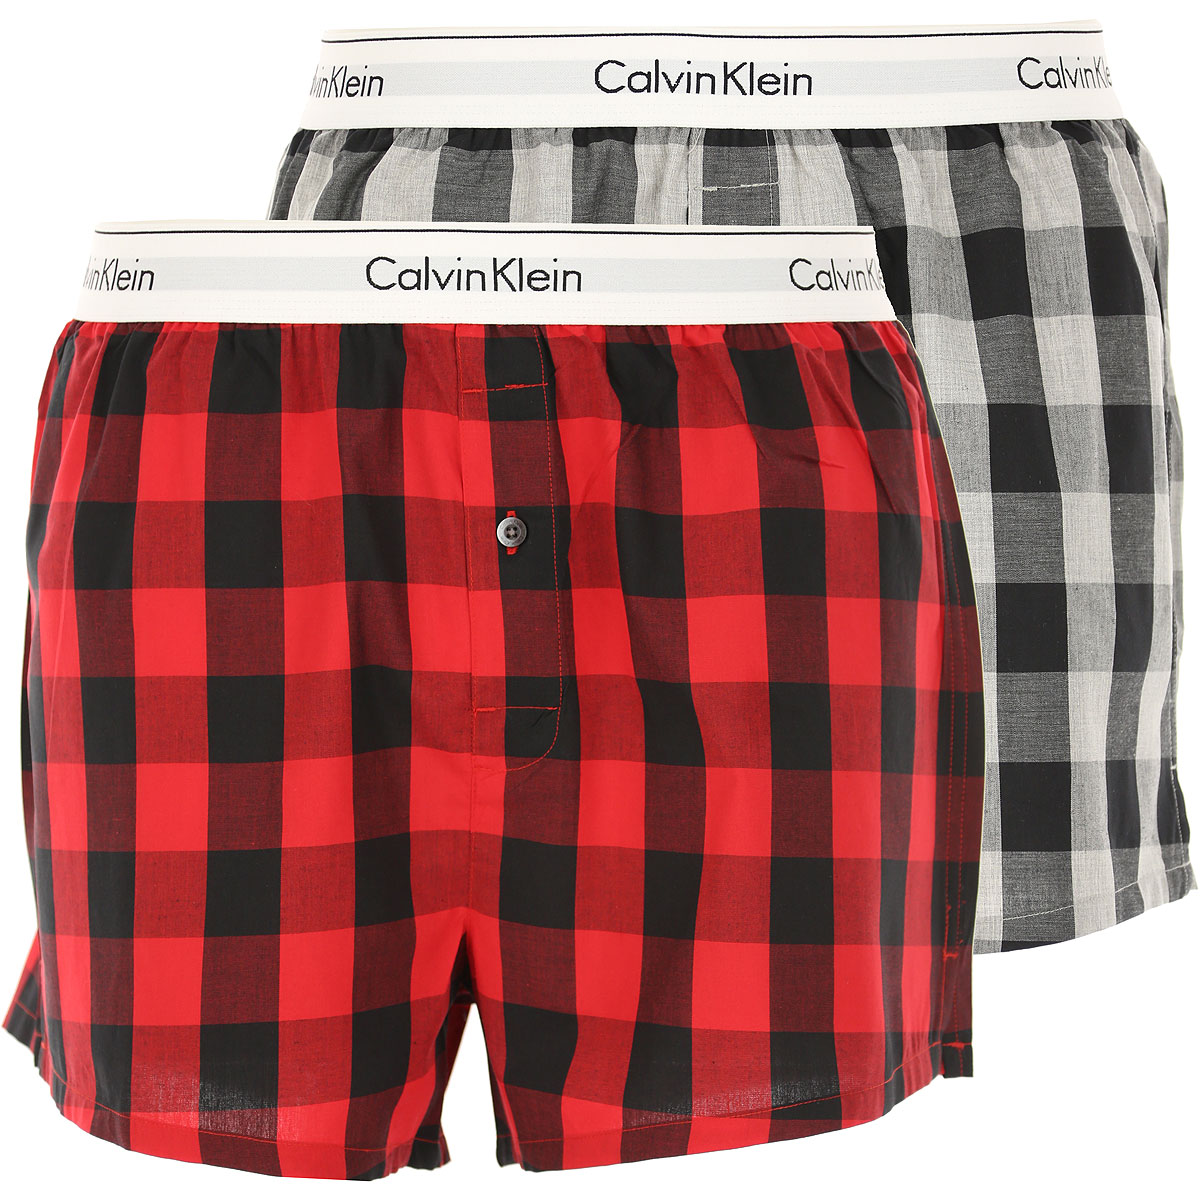 Calvin Klein Boxer Shorts für Herren, Unterhose, Short, Boxer Günstig im Sale, 2pack, Rot, Baumwolle, 2017, L M